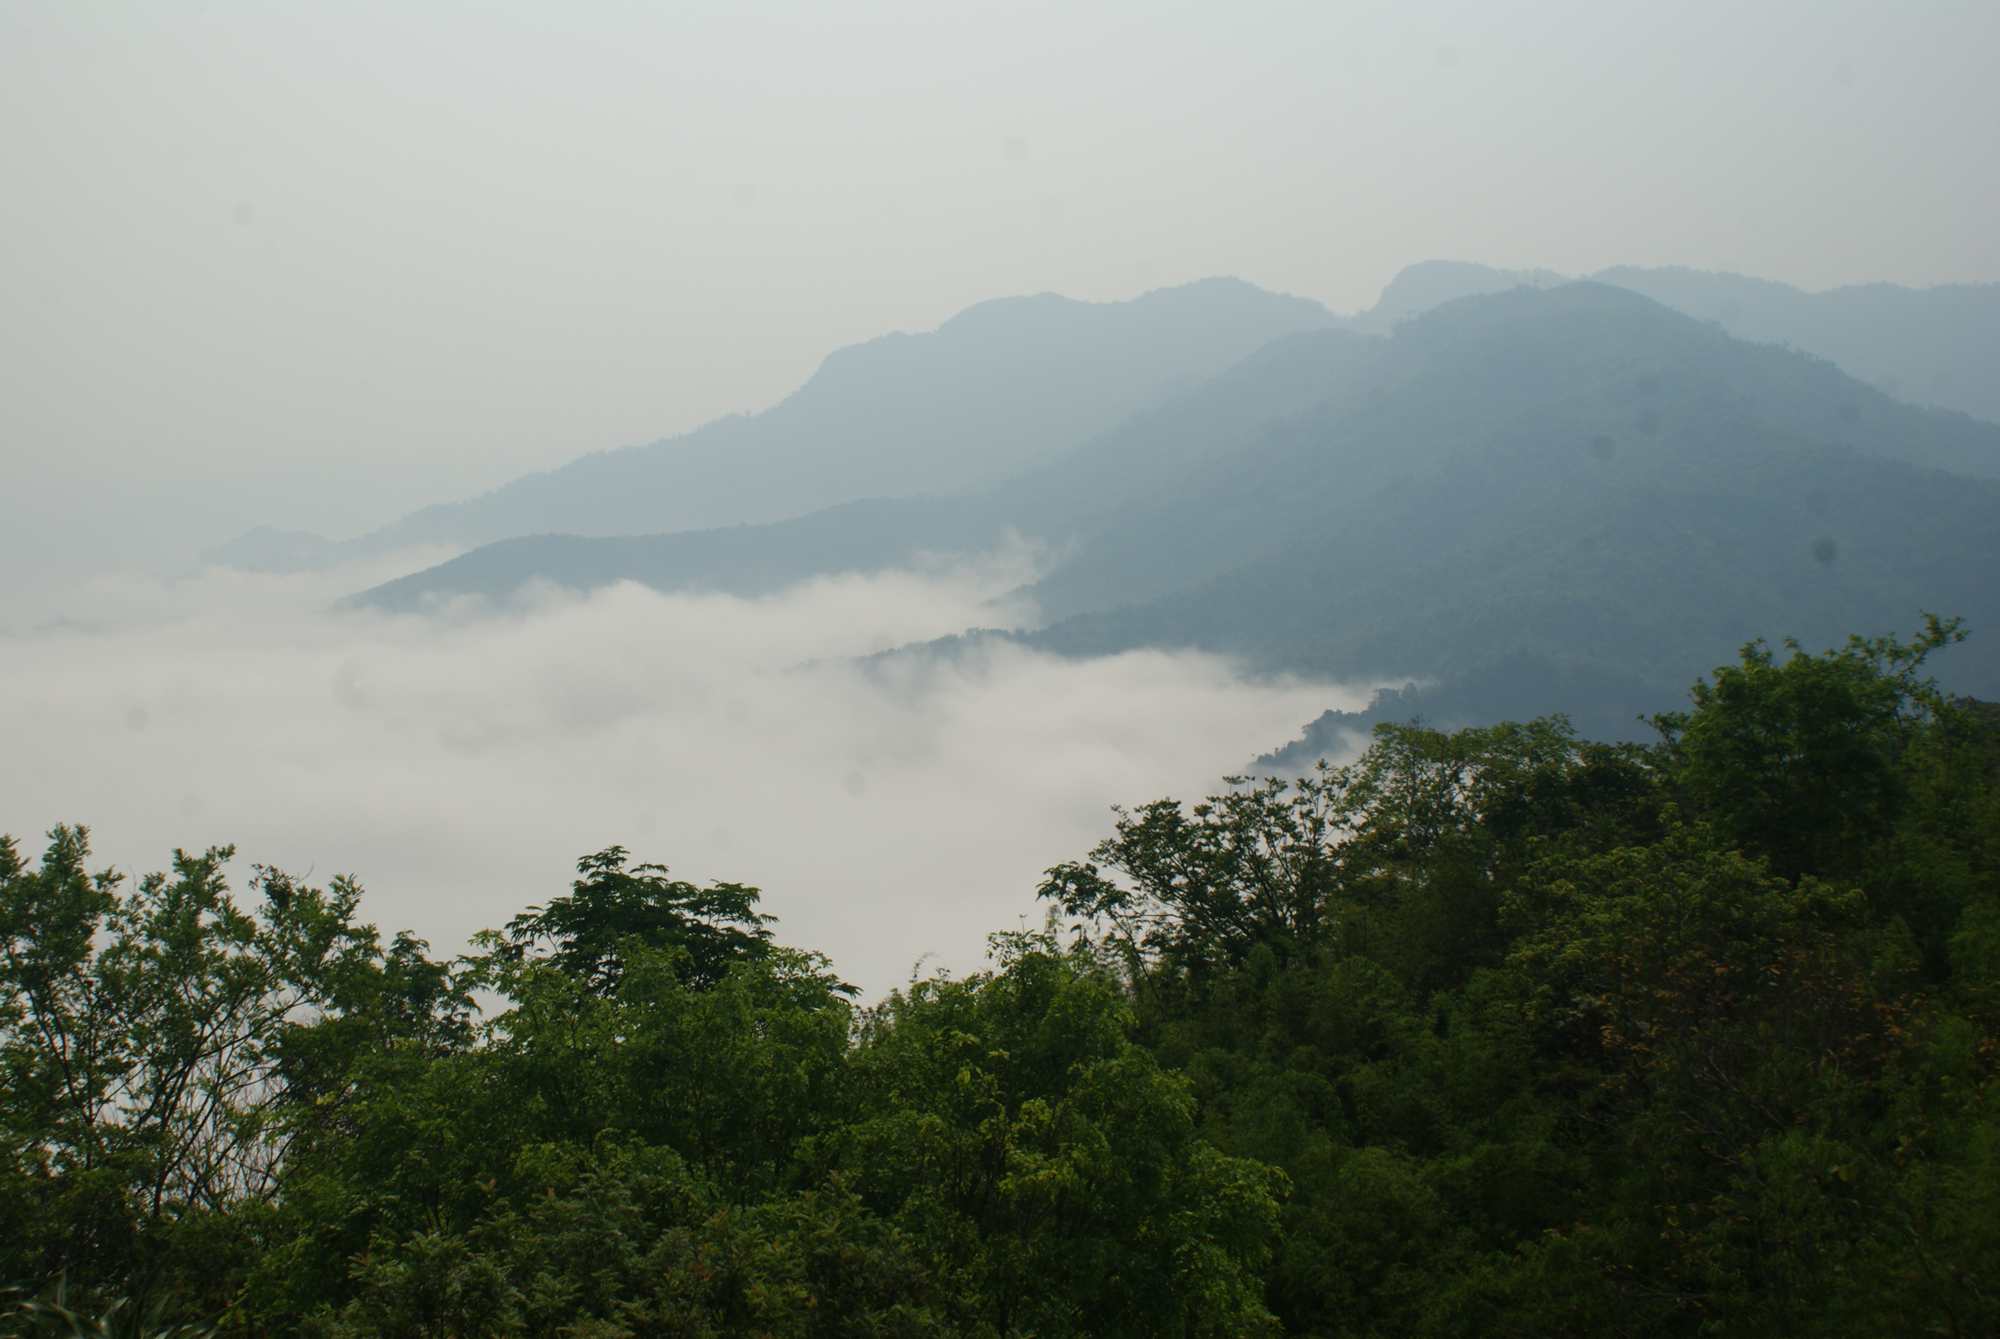 First viewpoint, Pha Daeng Peak. 